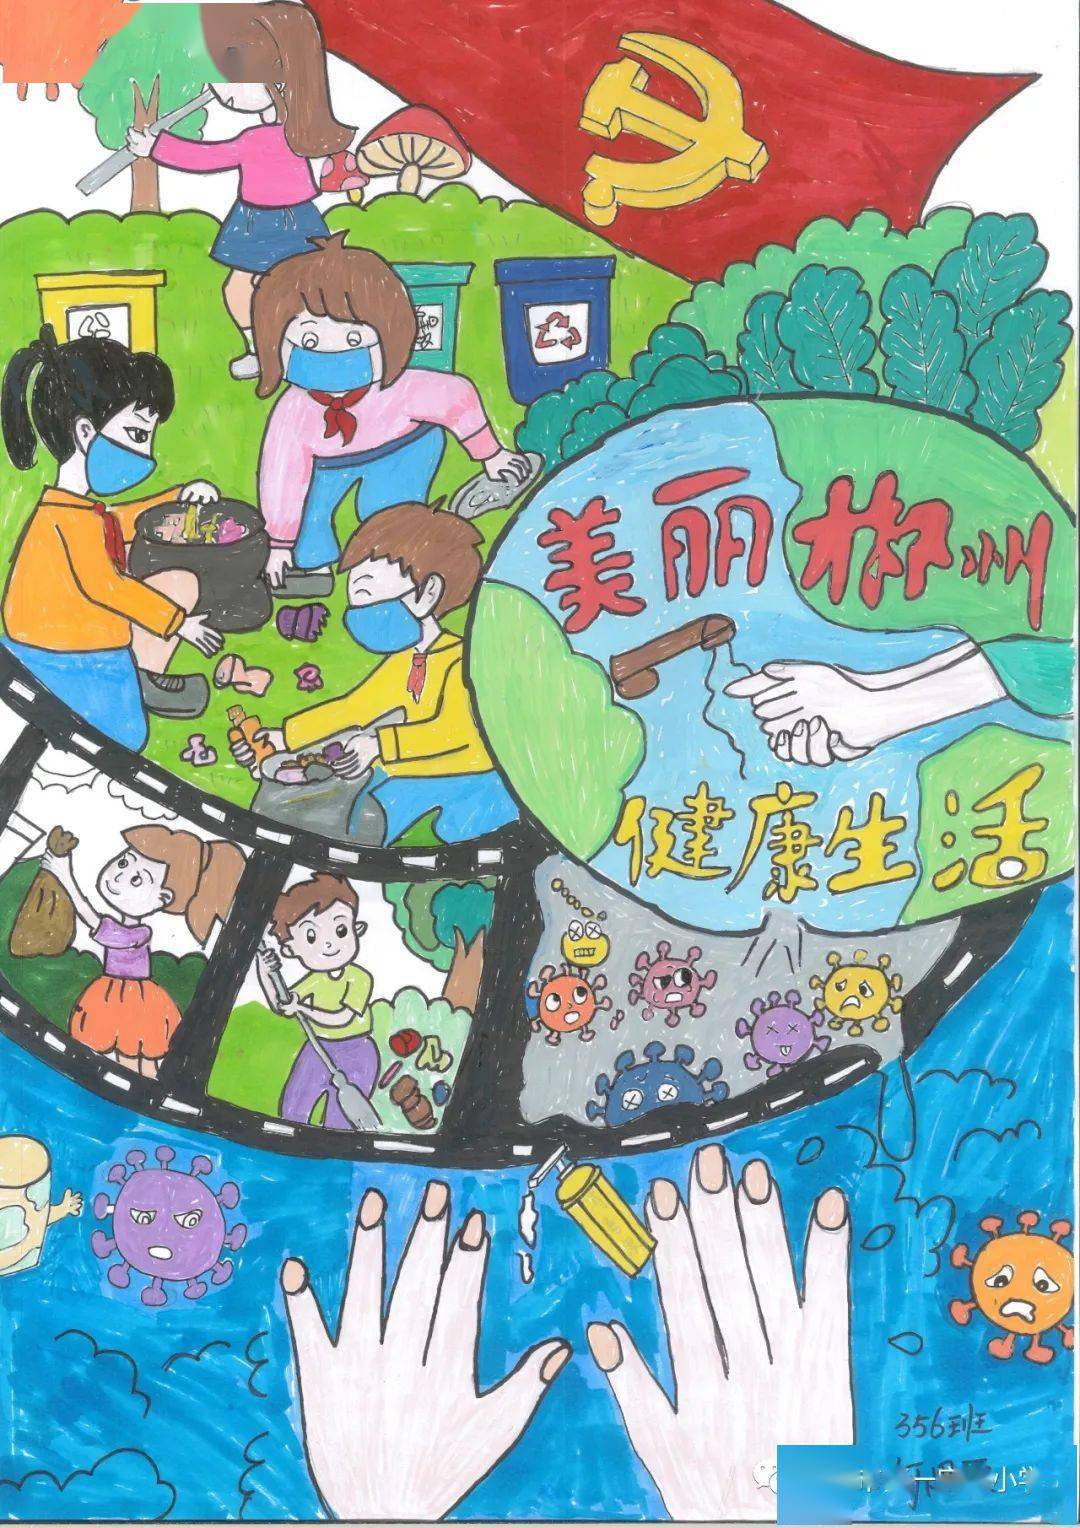 【绘画比赛】美丽郴州 健康生活 ——郴州市一完小开展绘画比赛活动